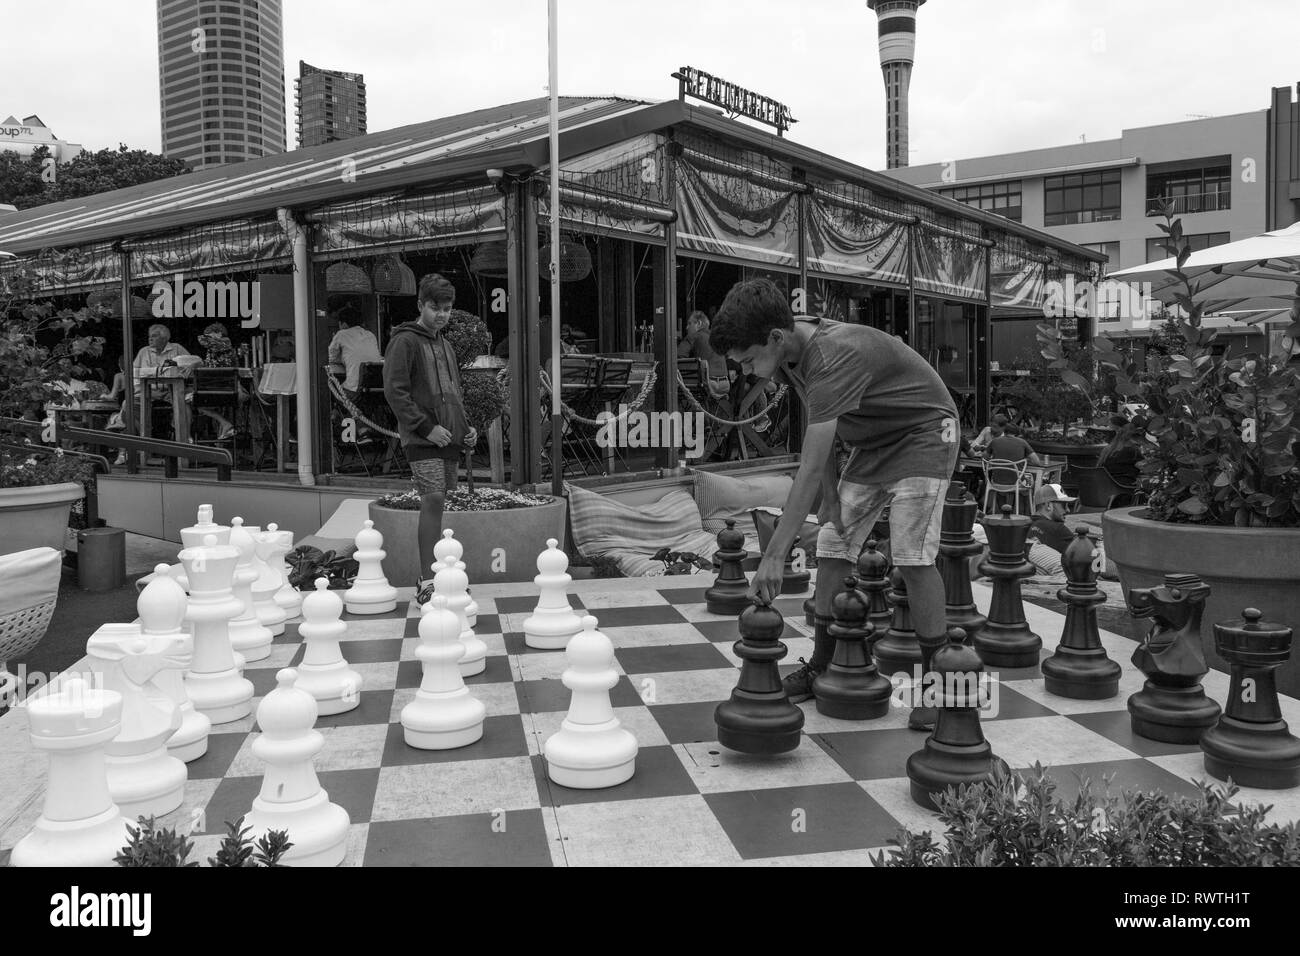 Mar Gen 1° 2019,Auckland Nuova Zelanda - due ragazzi adolescenti giocare una partita a scacchi su una grande scacchiera esterna con grandi pezzi di scacchi. Foto Stock